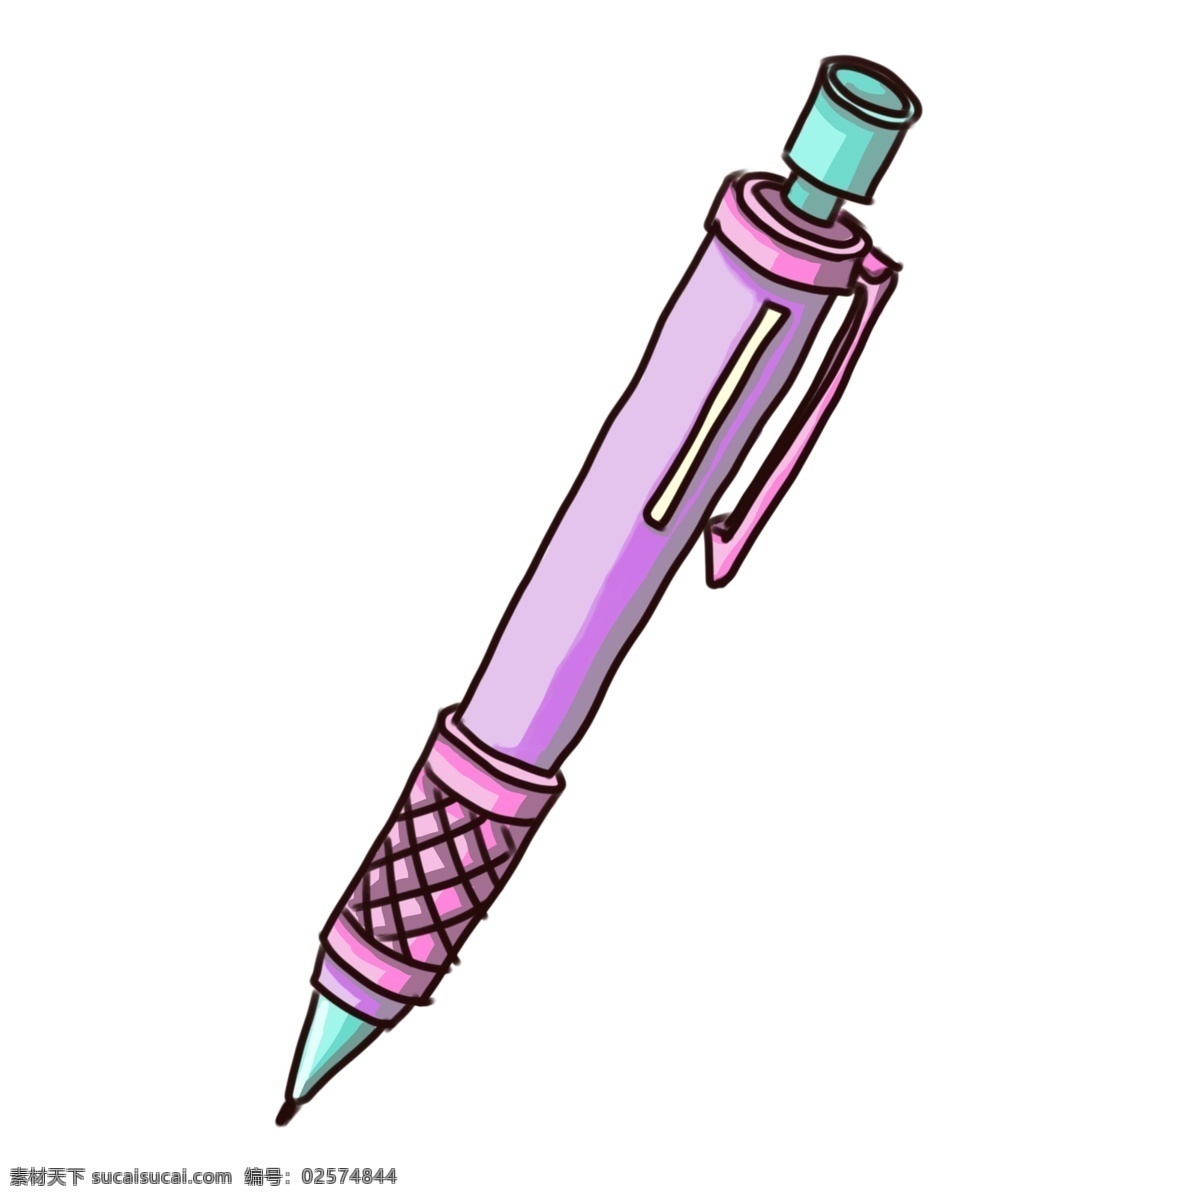 紫色 铅笔 卡通 插画 紫色的铅笔 卡通插画 写字用笔 笔的插画 文学用笔 学习文具 好用的铅笔